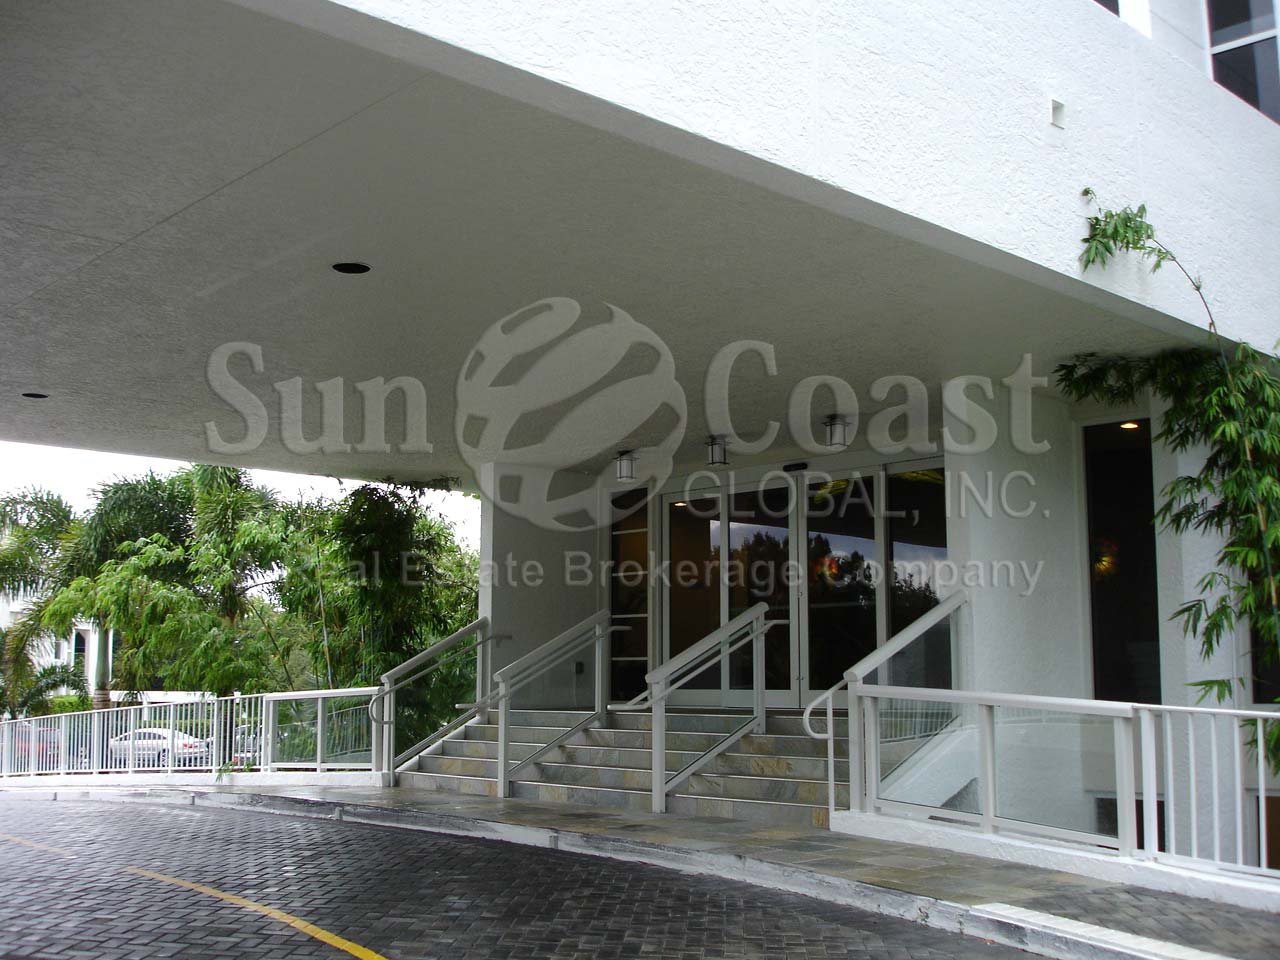 St Lucia Condominium Building Entrance